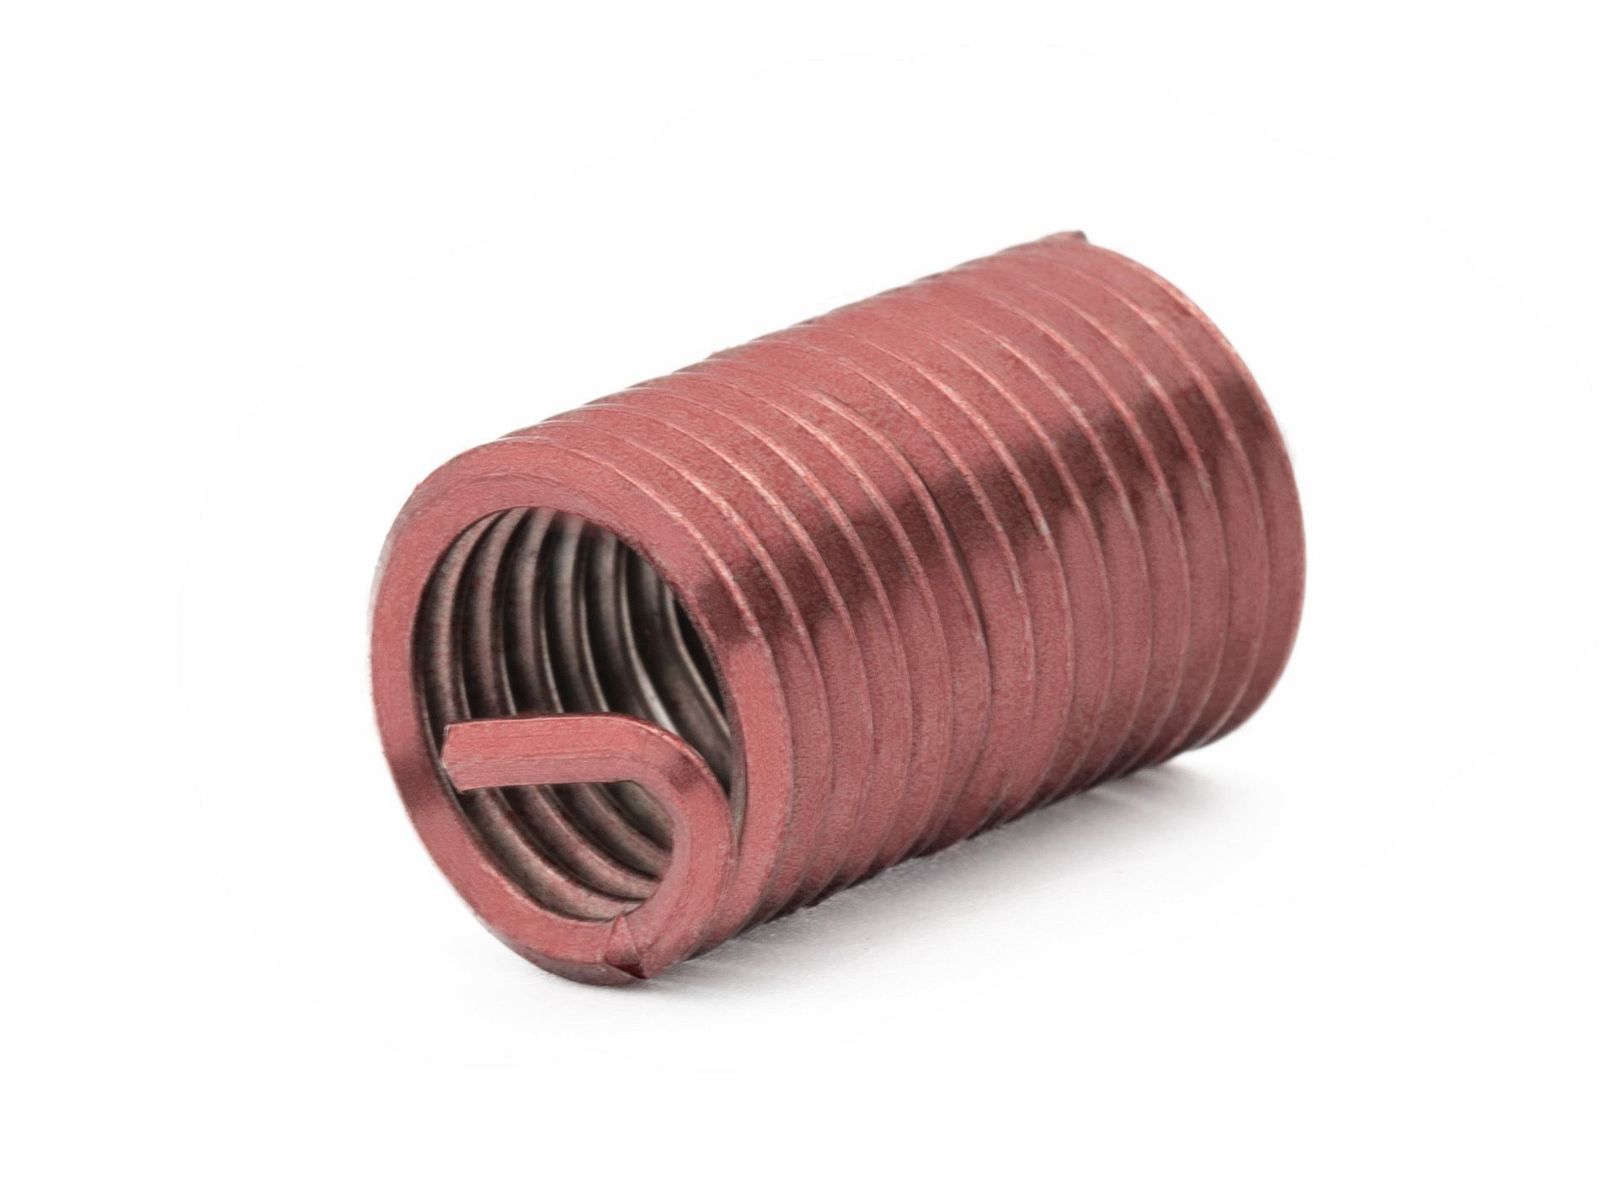 BaerCoil Wire Thread Inserts M 8 x 1.25 - 2.5 D (20 mm) - screw grip (screw locking) - 10 pcs.